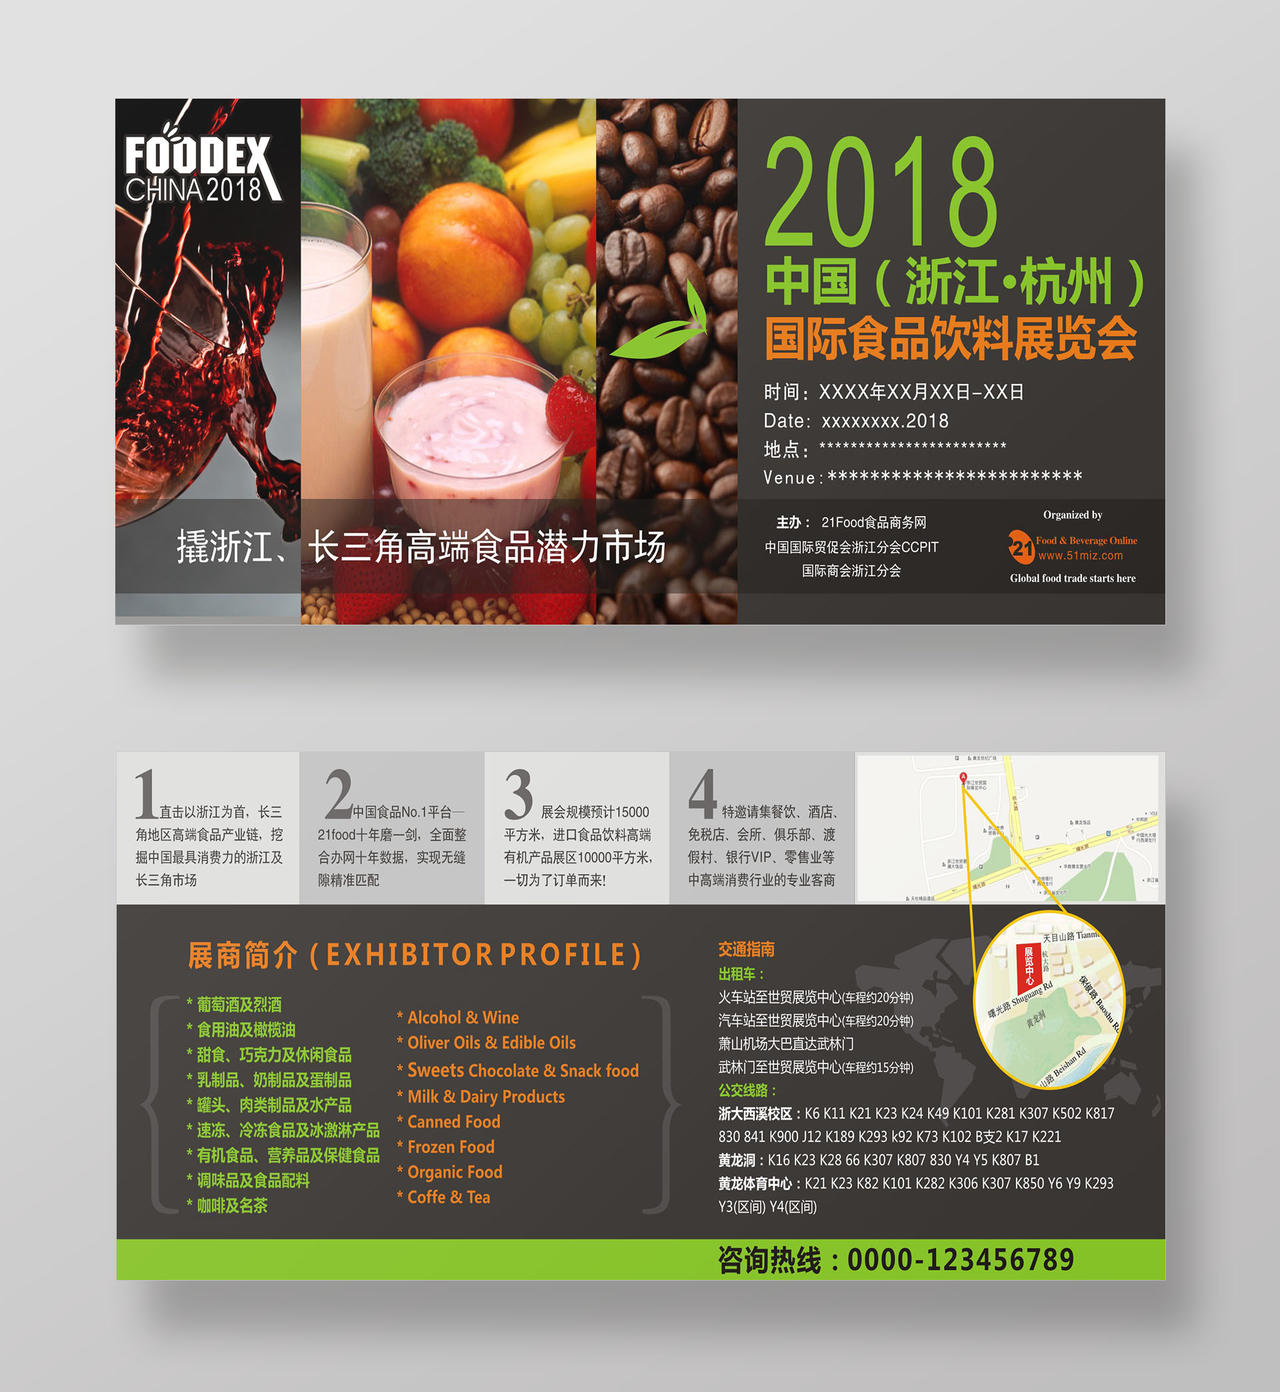 绿色食物背景国际食品饮料展览会展会海报